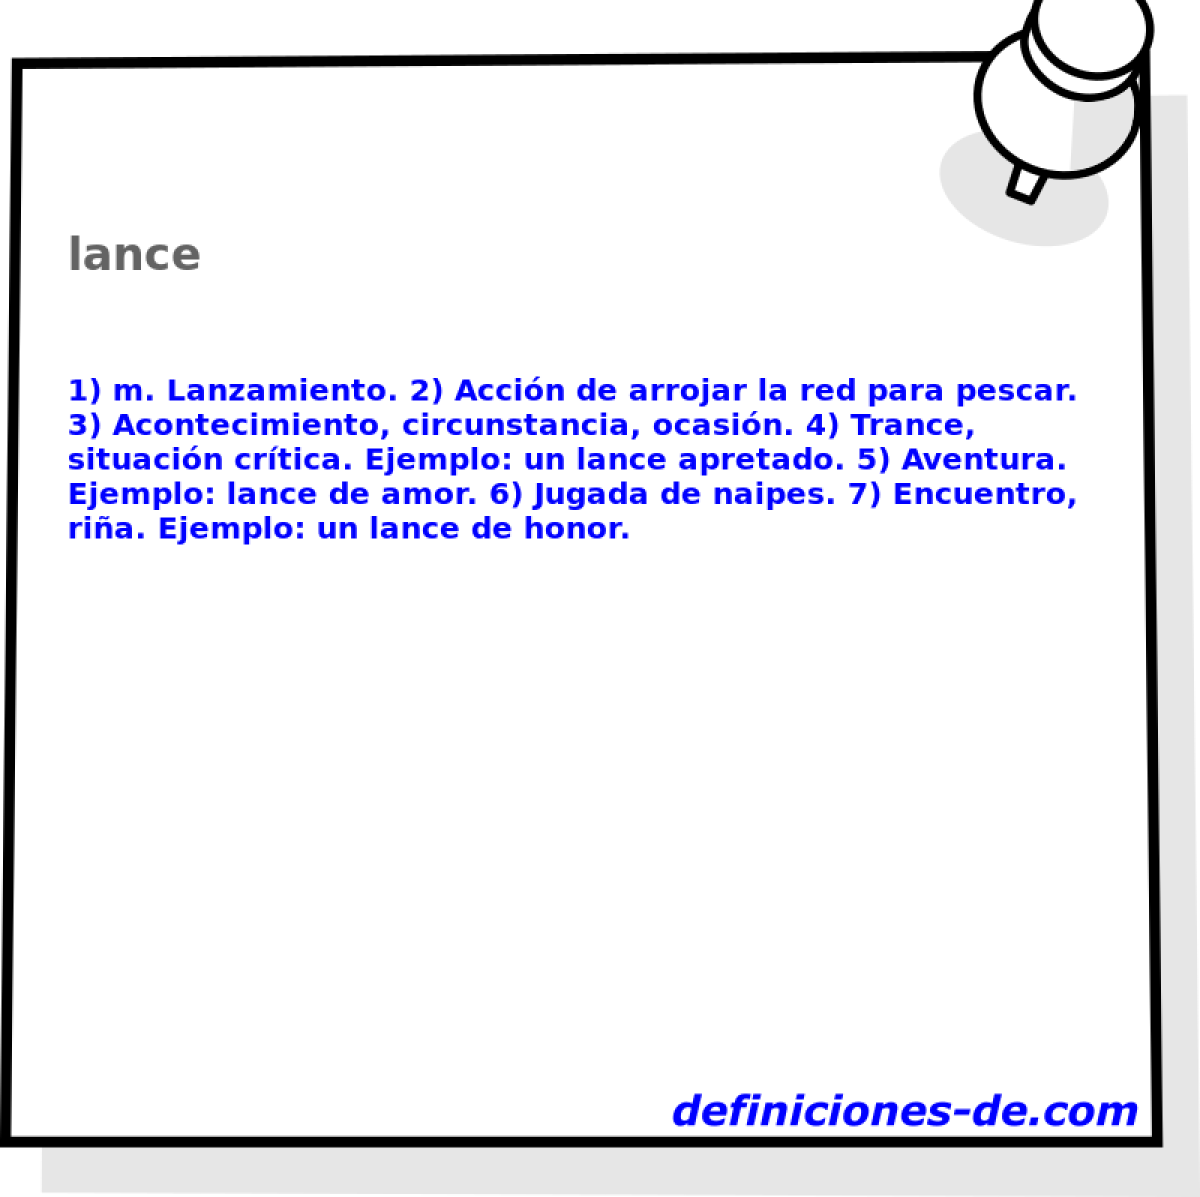 lance 